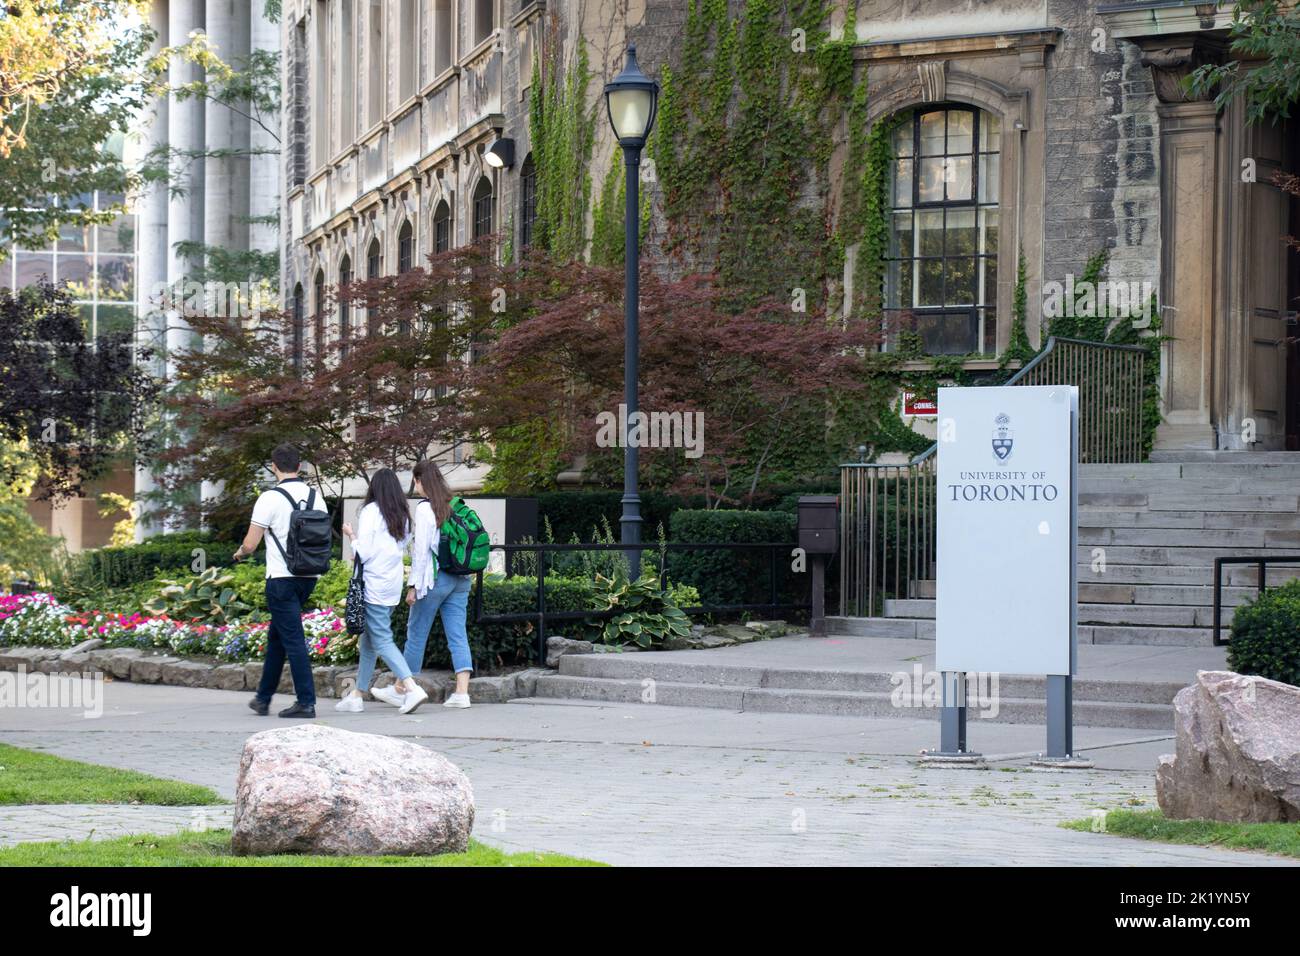 Studenten gehen an einem Gebäude mit einem Schild für die Universität von Toronto vorbei, das an einem sonnigen Nachmittag auf dem Campus zu sehen ist. Stockfoto